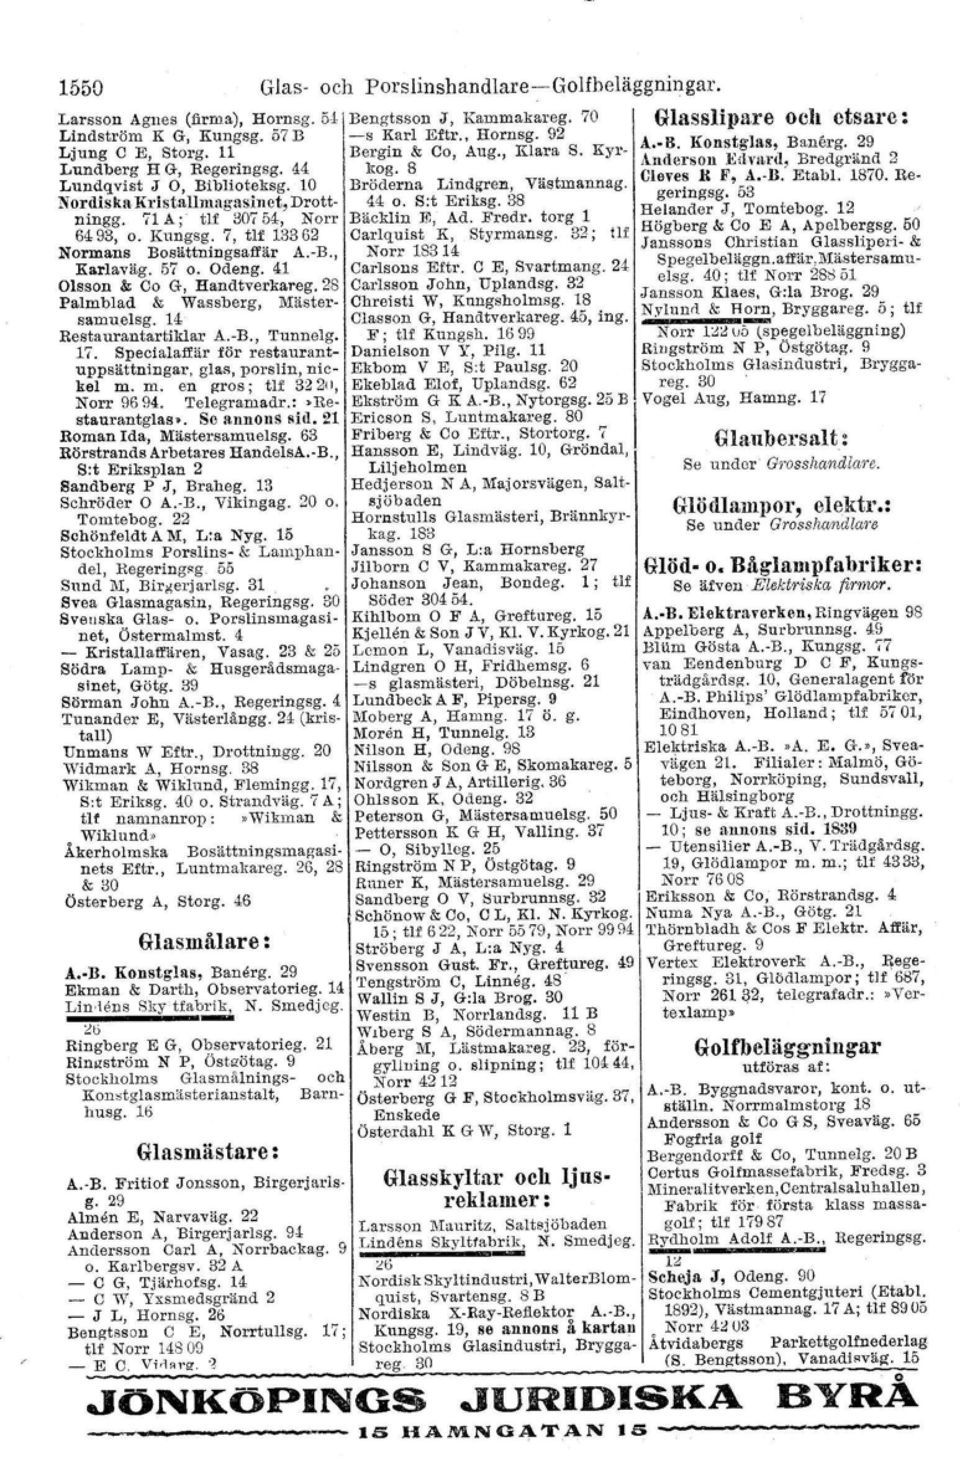 1870. Re- NordiskaKl'istallmagasinct,Drott- 44 o. s:t Eriksg. 38 geringsg. 53 ningg. 71 A;- flf 30754, Norr Bäcklin l!;, Ad. Fredr. torg 1 Helander J, Tomtebog. 12 6493, o. Kungsg.